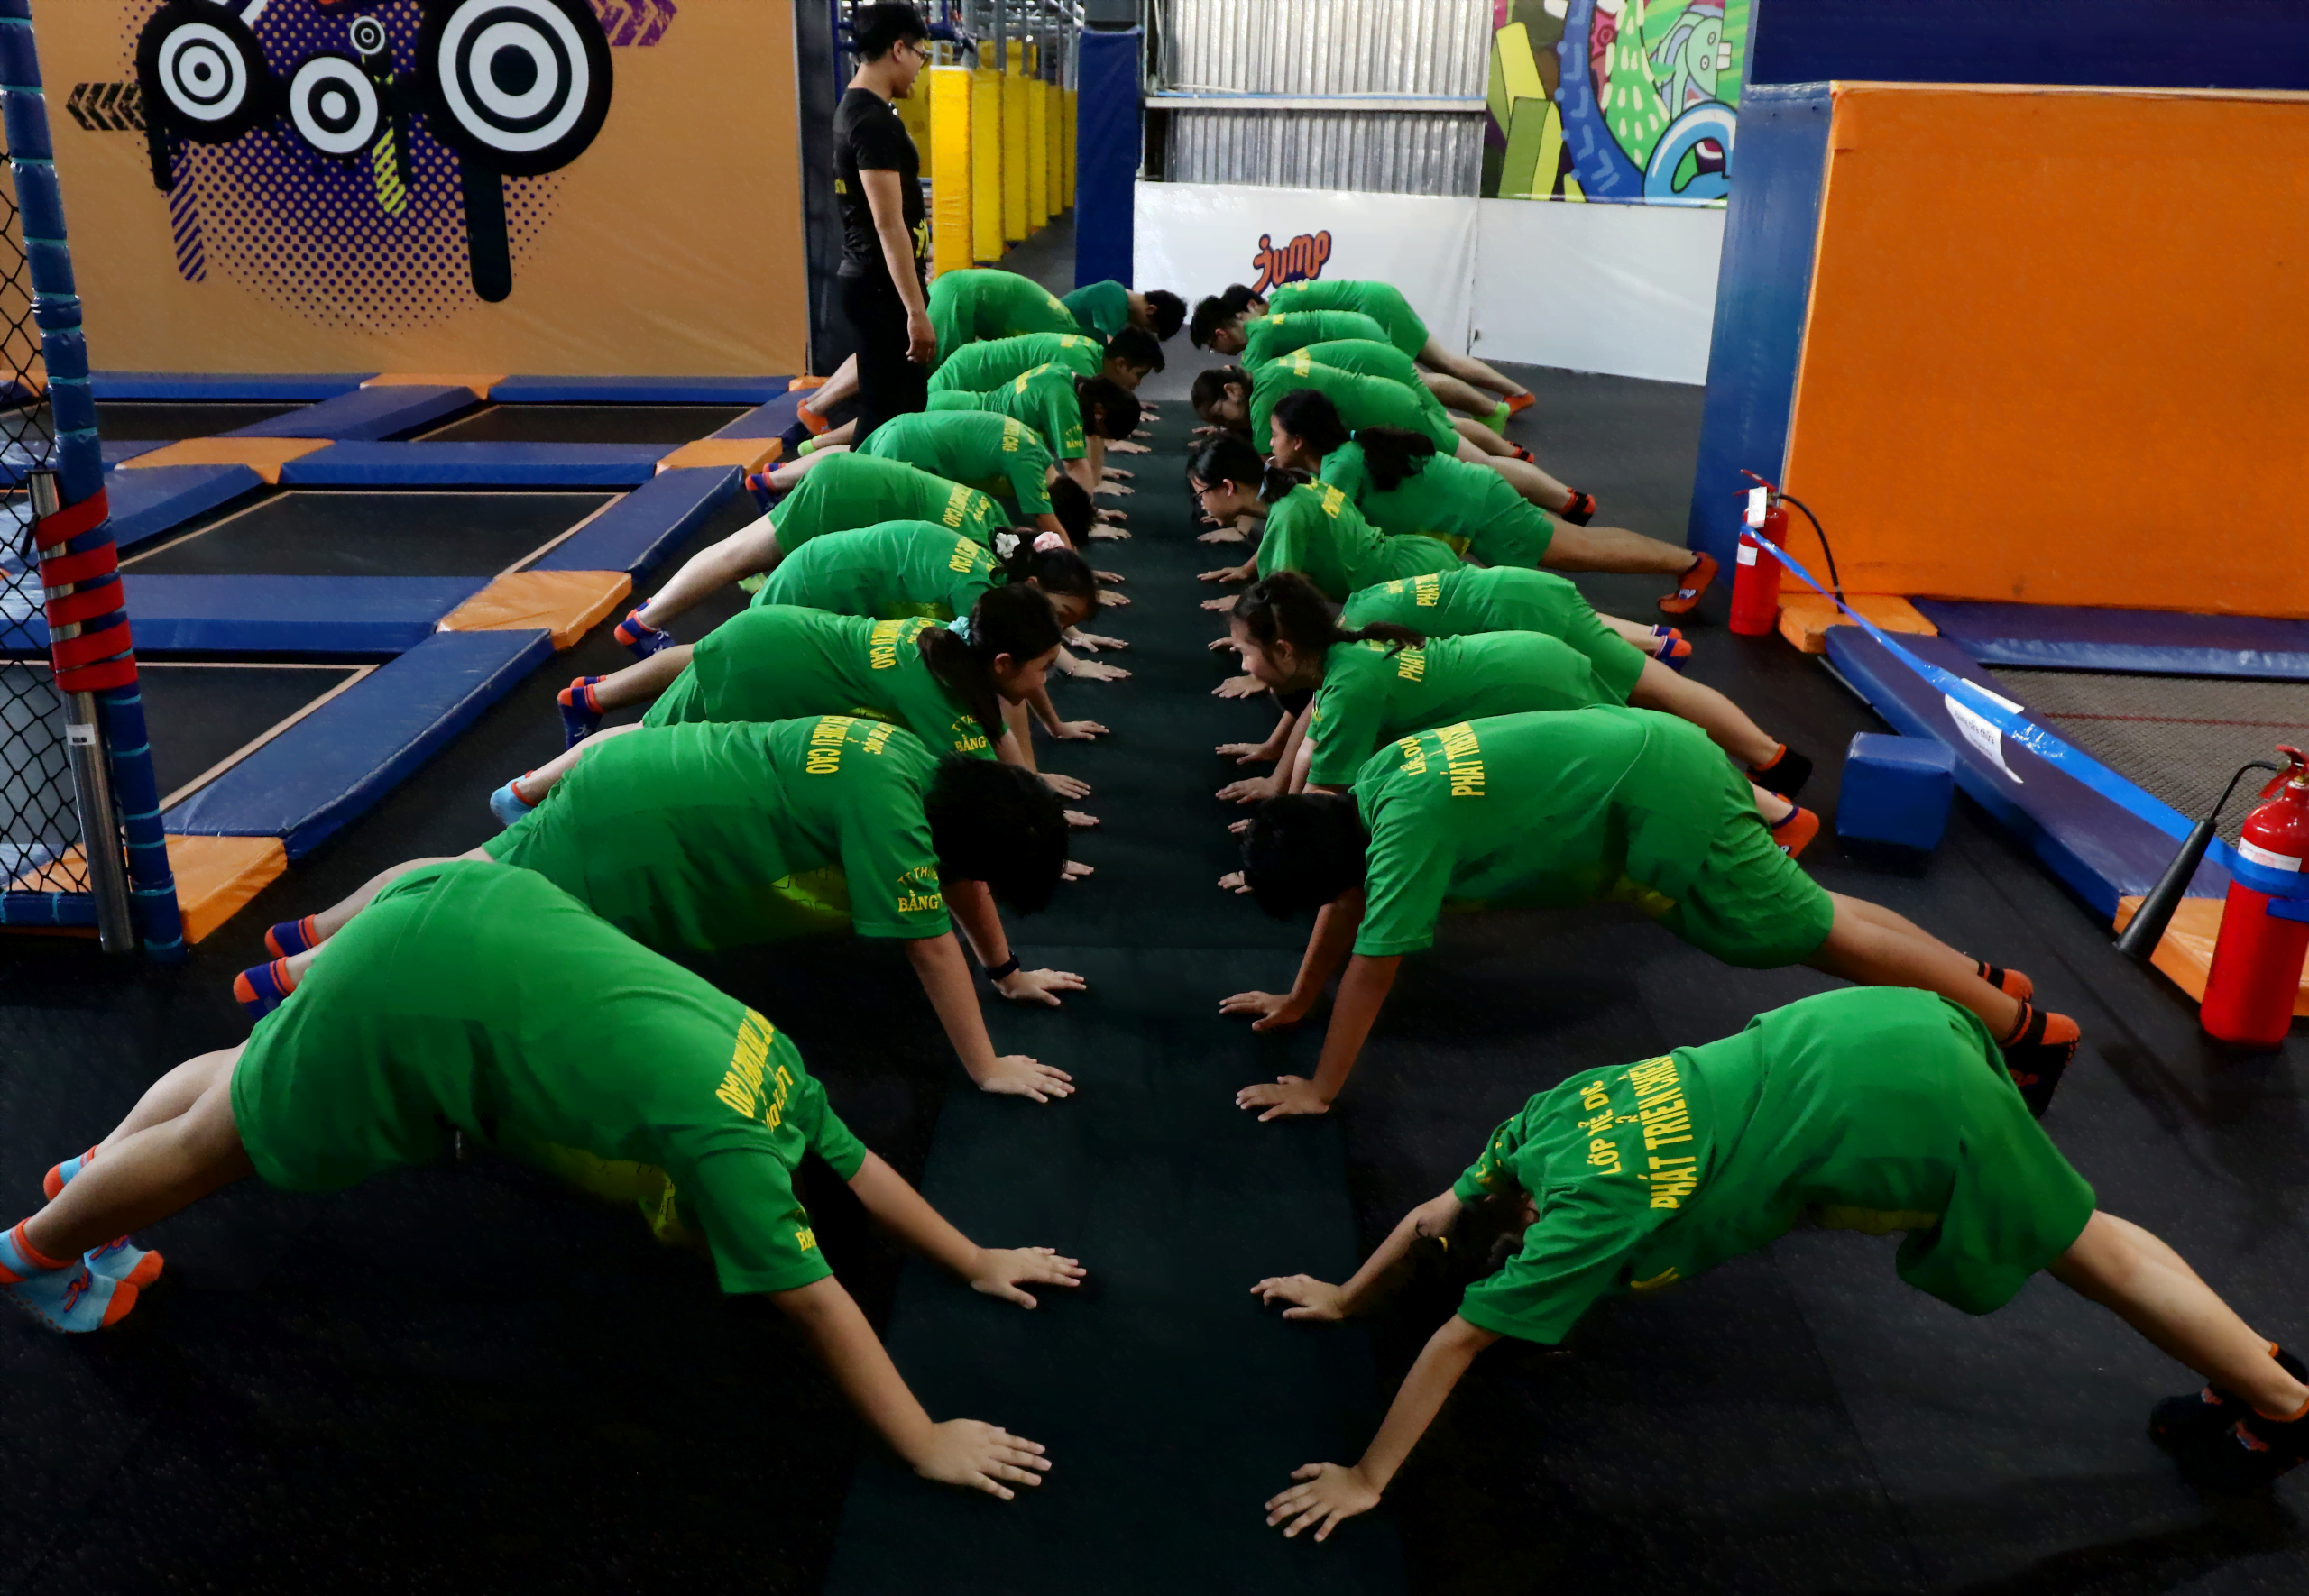 Thể Dục Bằng Tâm tự hào là đơn vị chuyên cung cấp cho trẻ những bài tập thể dục phát triển chiều cao tốt nhất.